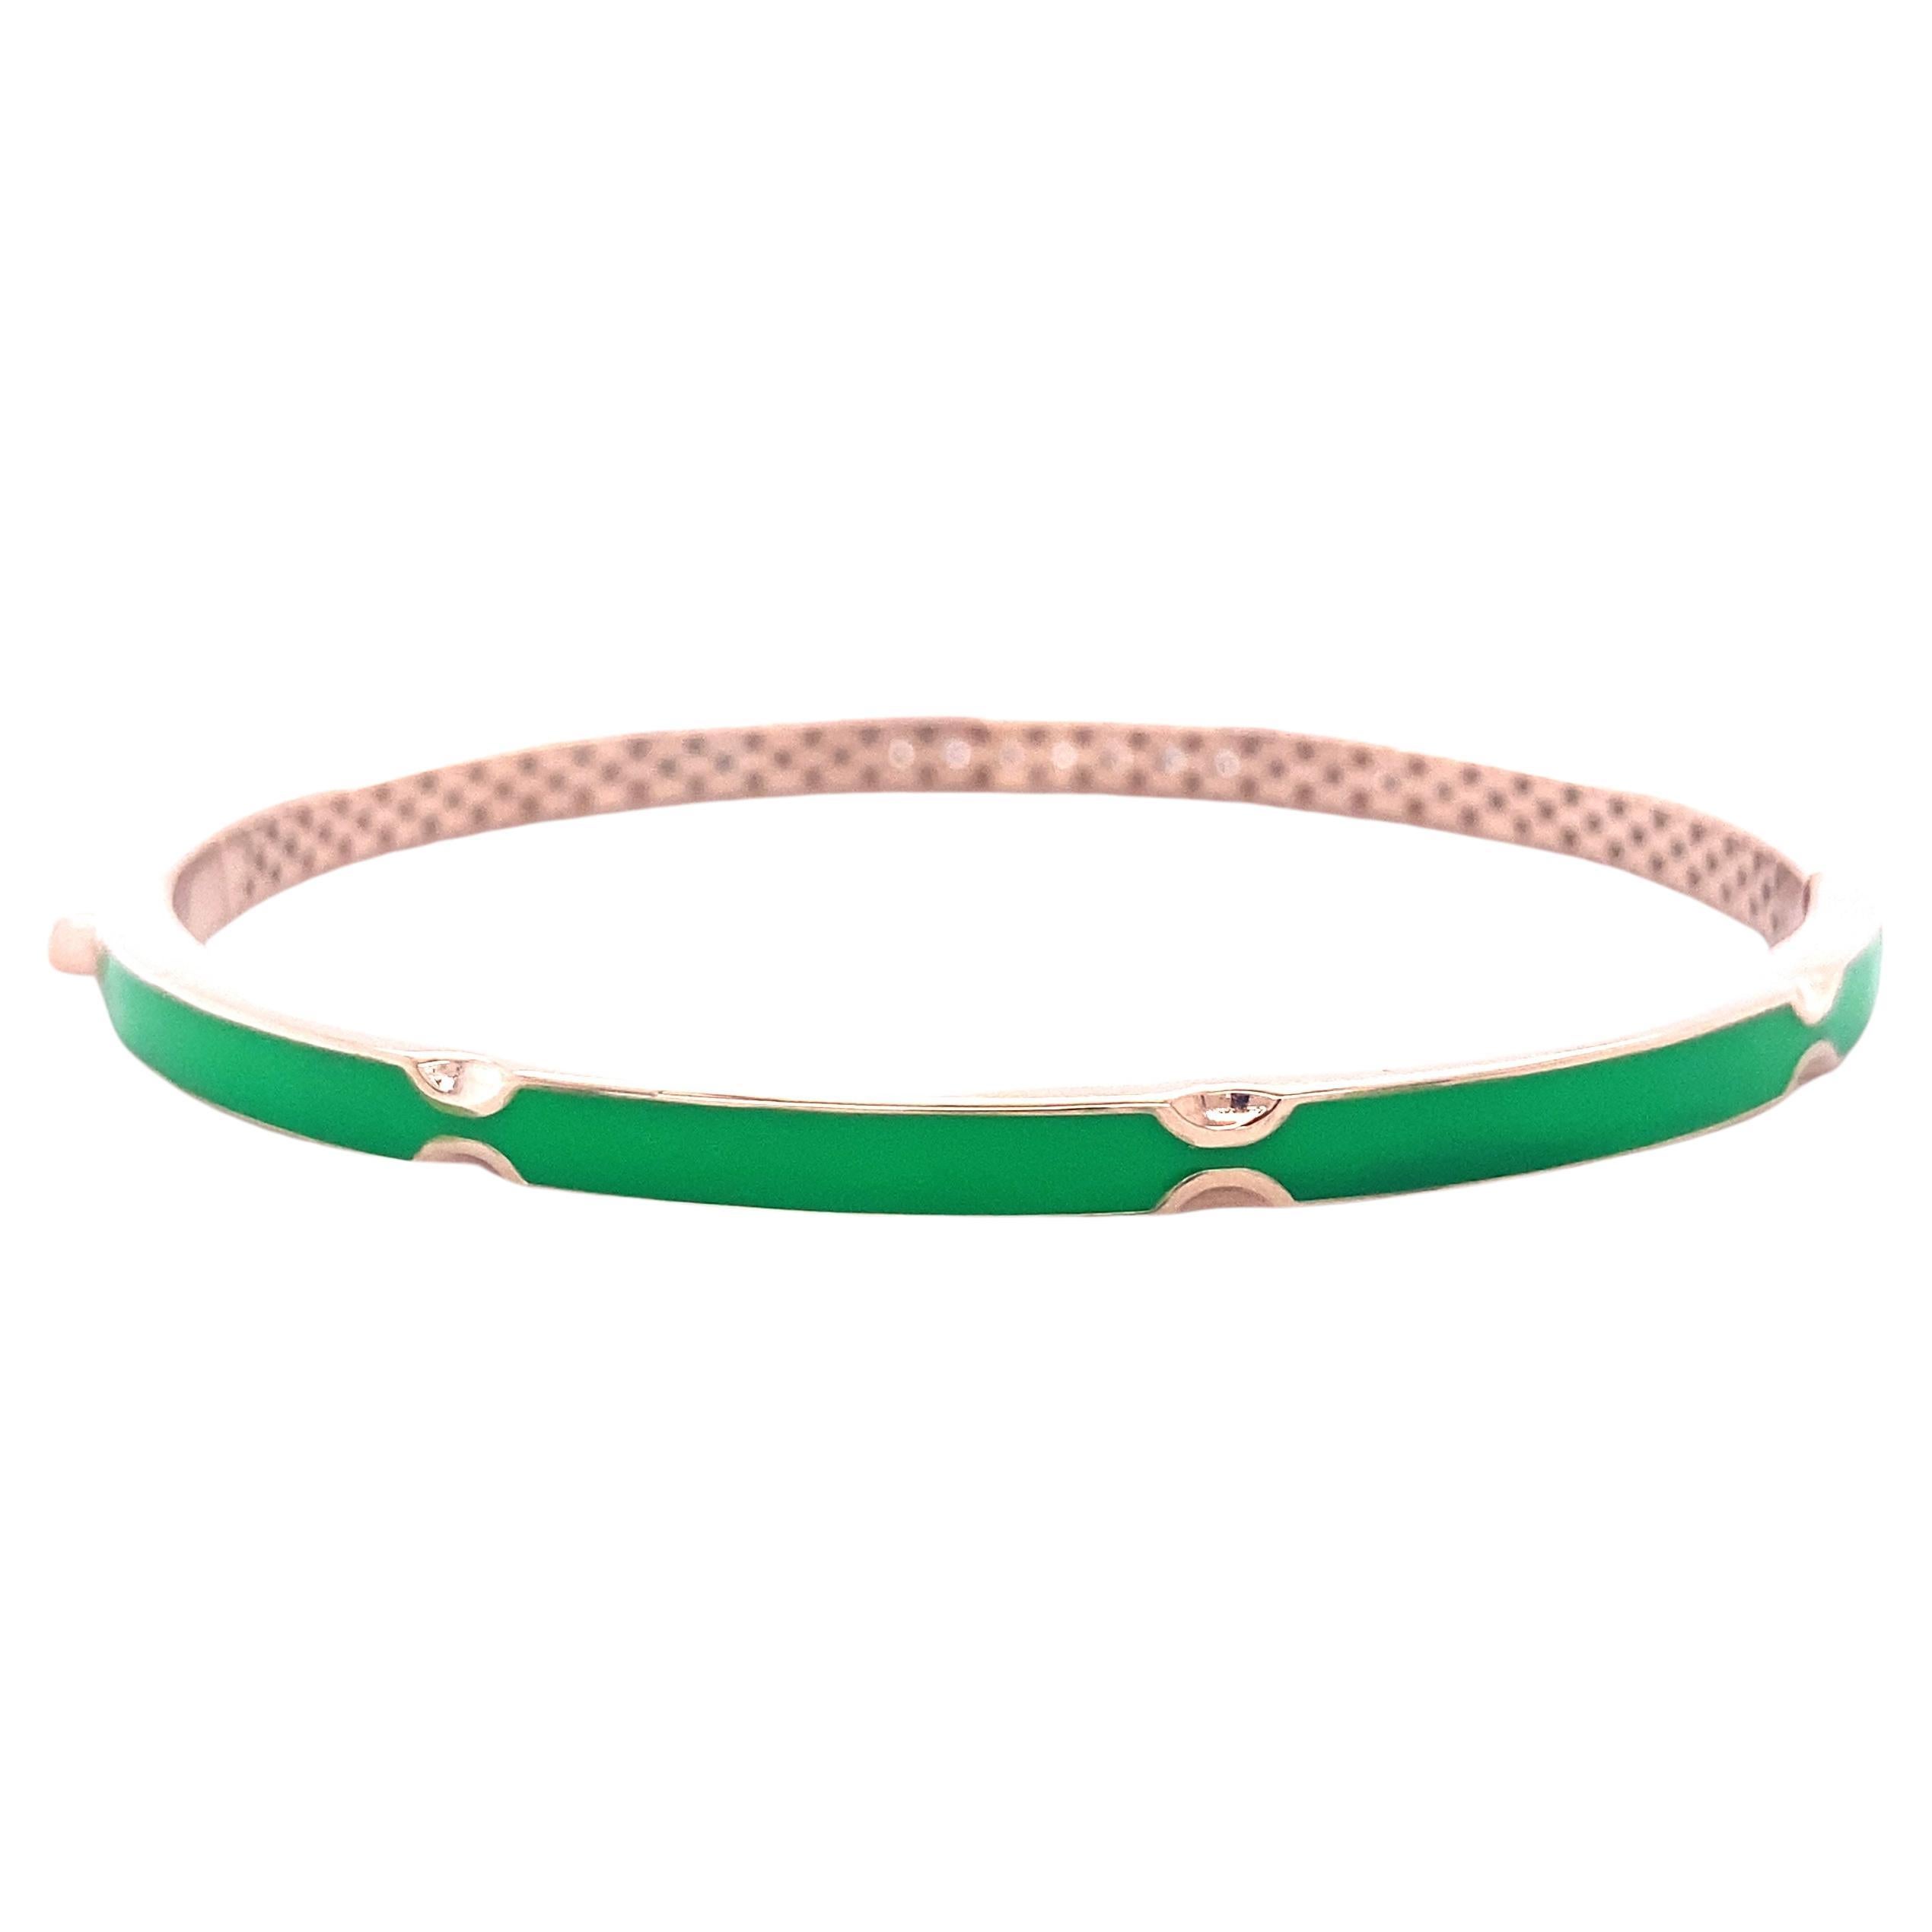 Le bracelet en diamant avec émail vert serti en or massif 18k est un bijou époustouflant qui allie l'élégance des diamants à la beauté vibrante de l'émail vert. Ce bracelet unique se présente sous la forme d'une manchette, dont un côté est orné d'un